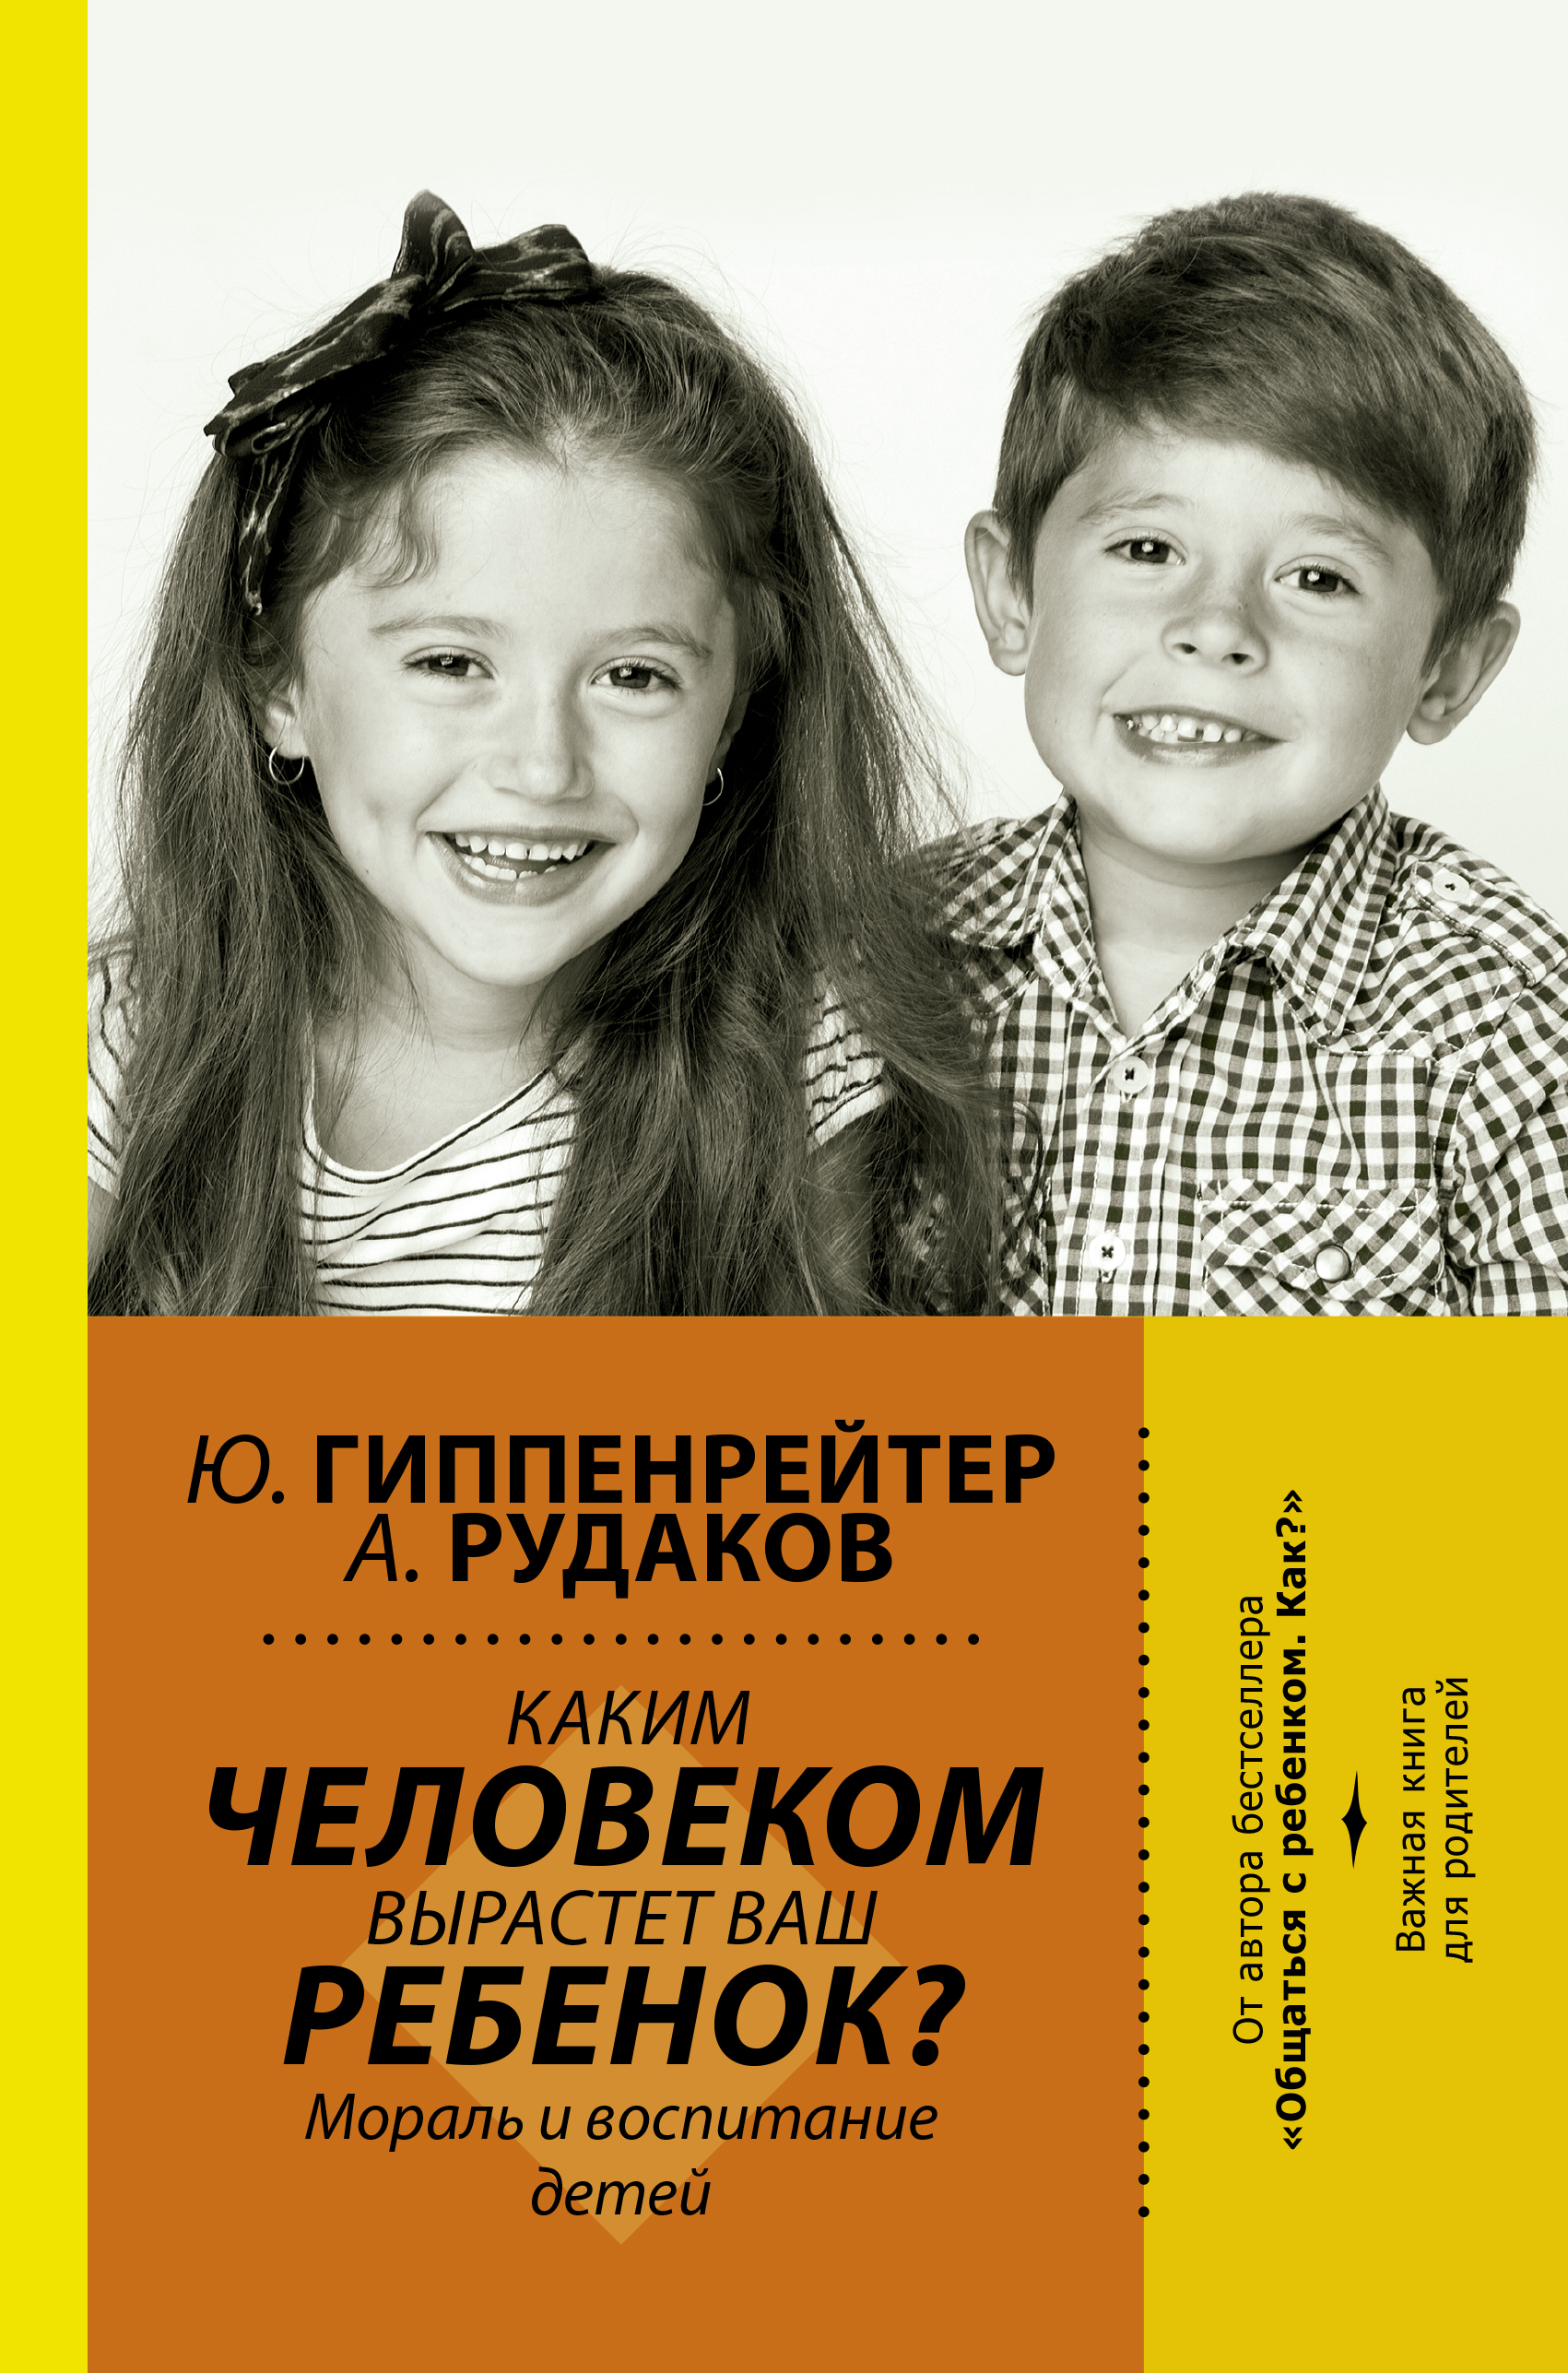 Гиппенрейтер Юлия Борисовна Каким человеком вырастет ваш ребенок? Мораль и воспитание детей - страница 0